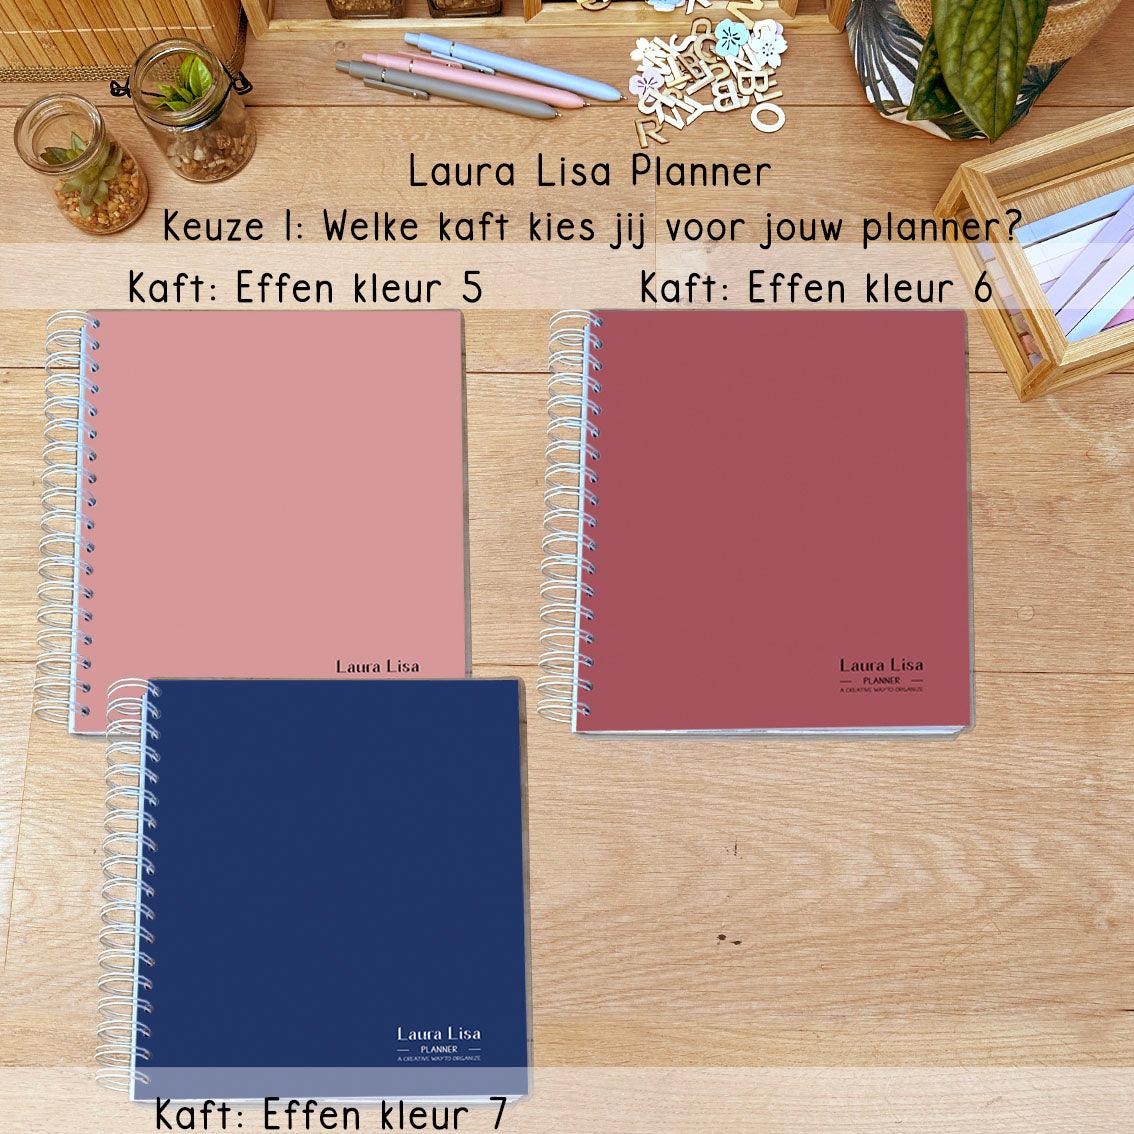 Ontdek onze nieuwe effen kaften voor de Laura Lisa Planner! Personaliseer je planner met kleuren die passen bij jouw stijl en voorkeuren. Welke kleur past het beste bij jou?